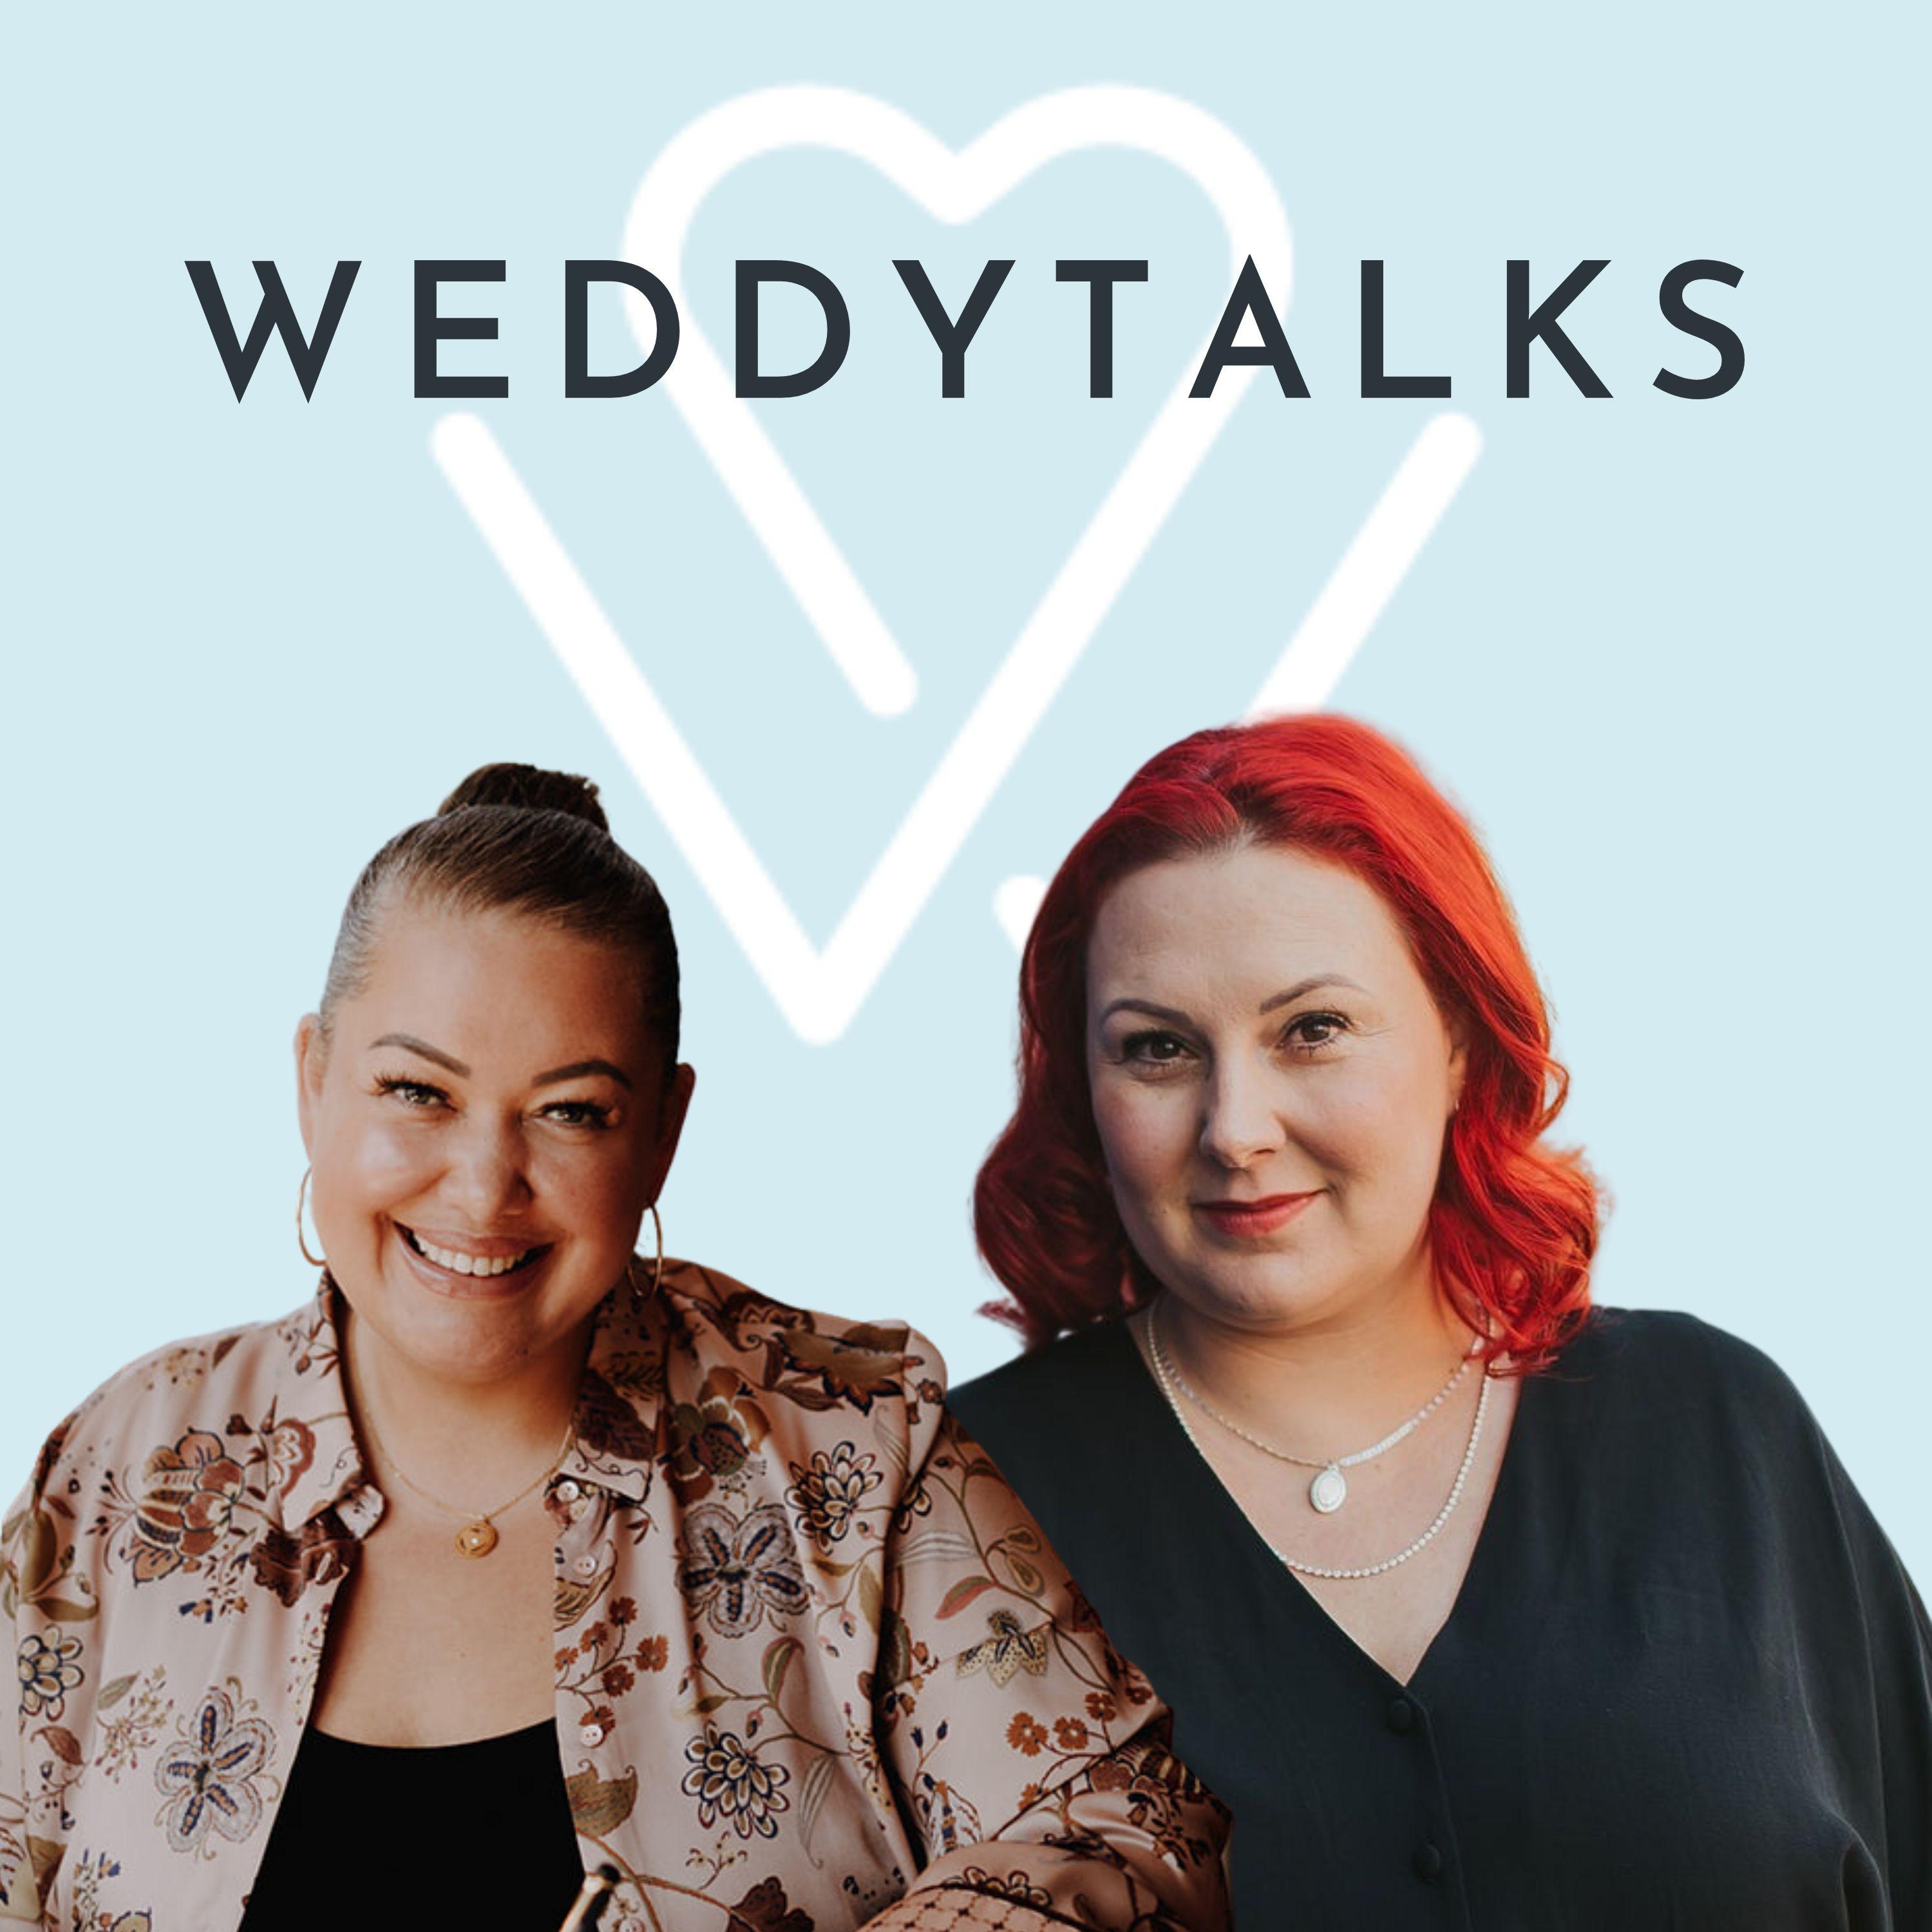 Zwei Frauen stehen vor einem blauen Hintergrund mit den Worten Weddytalks.